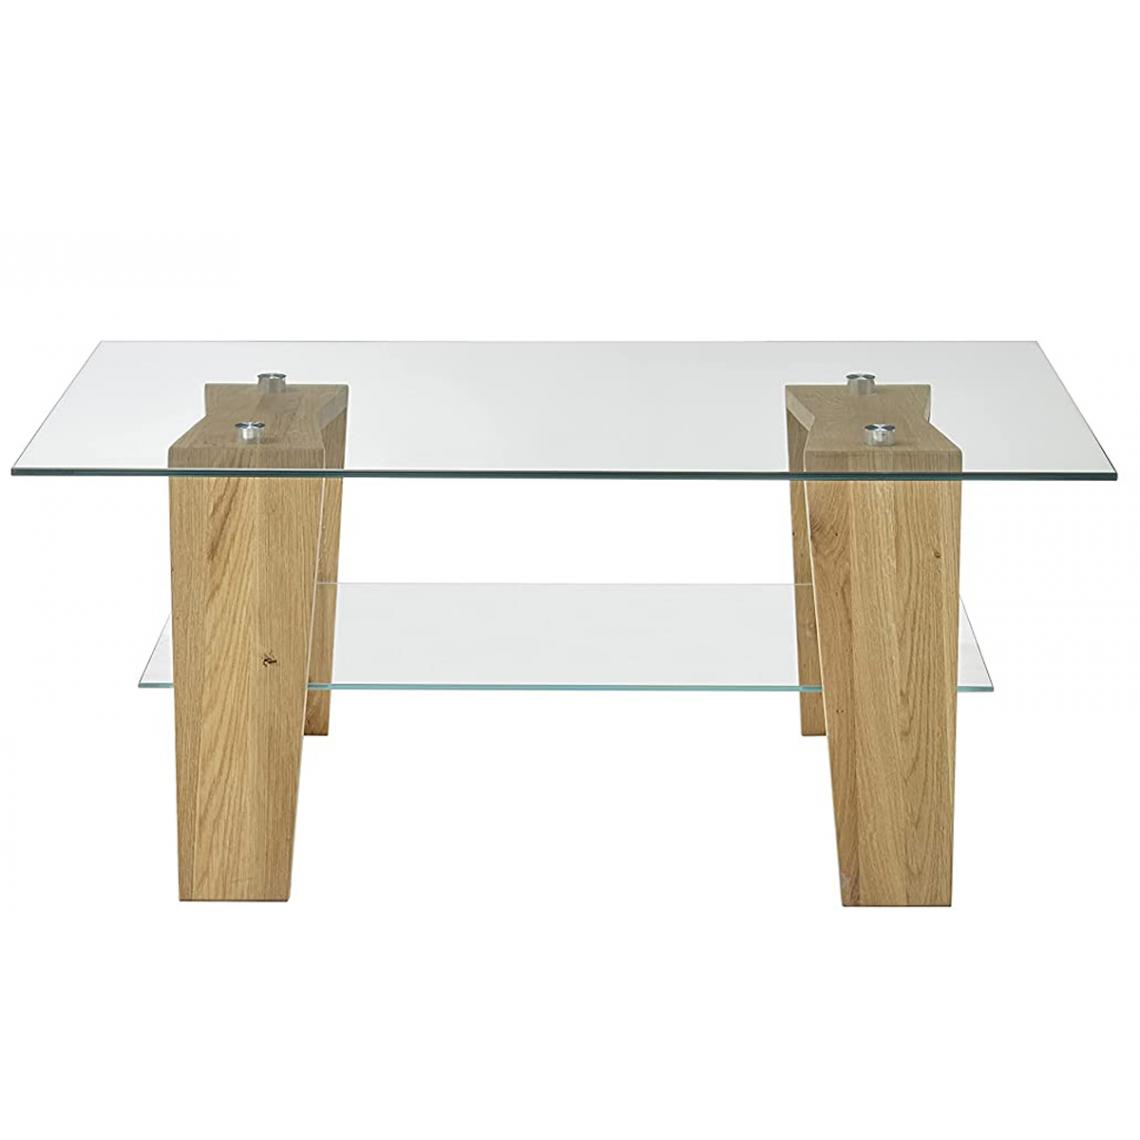 Pegane - Table basse en verre et chêne massif - L.100 x H.40 x P.65 cm - Tables basses